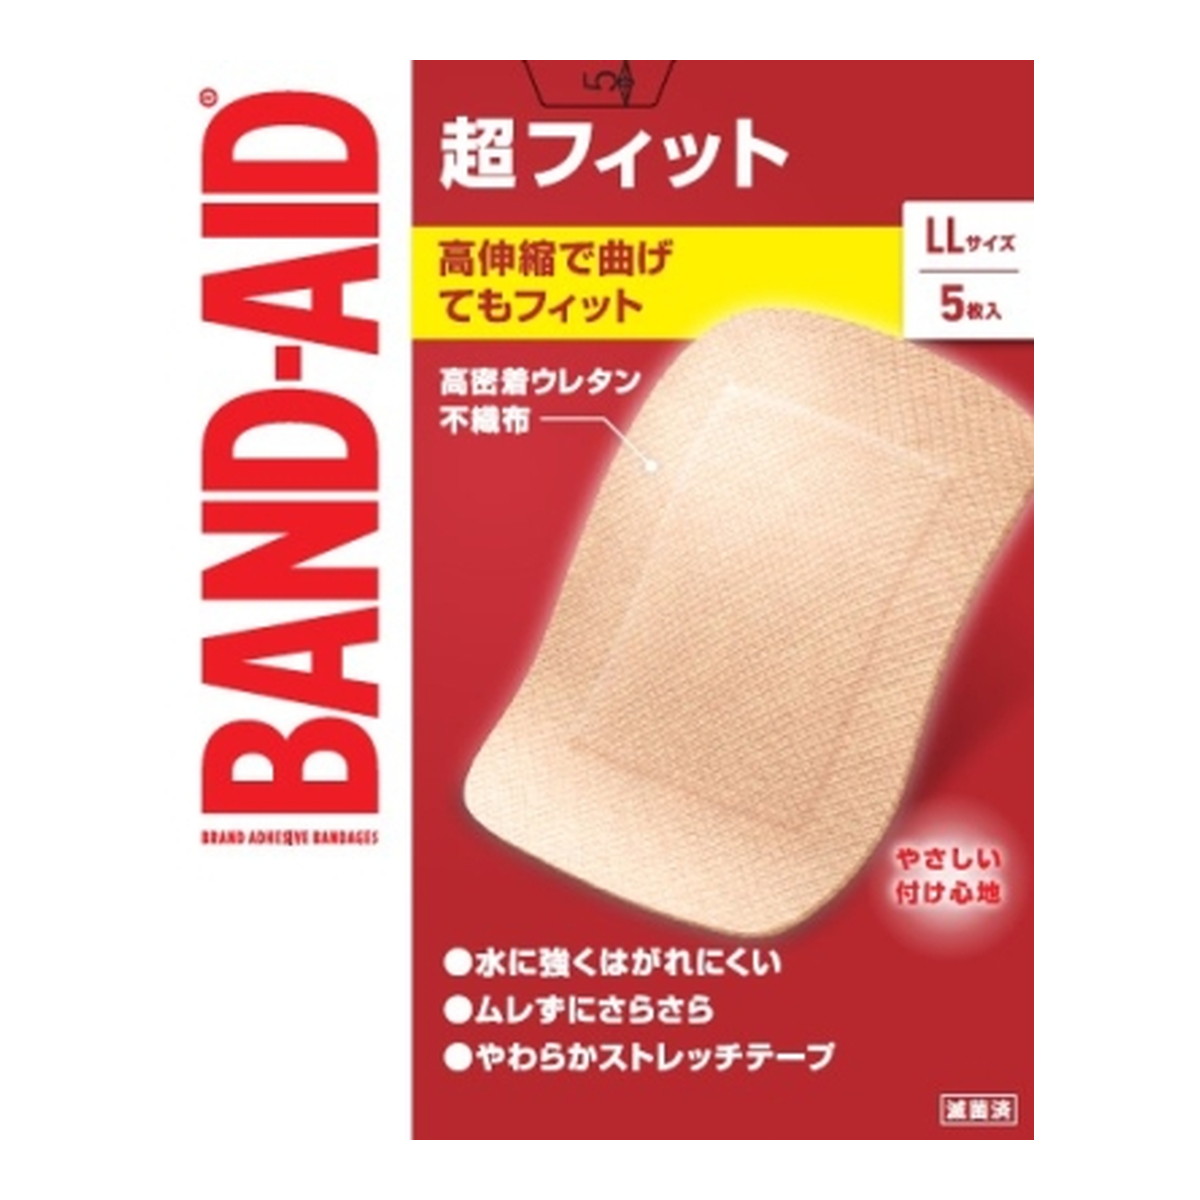 BANDーAID Kenvue バンドエイド 超フィット LLサイズ 5枚入×72個 絆創膏の商品画像